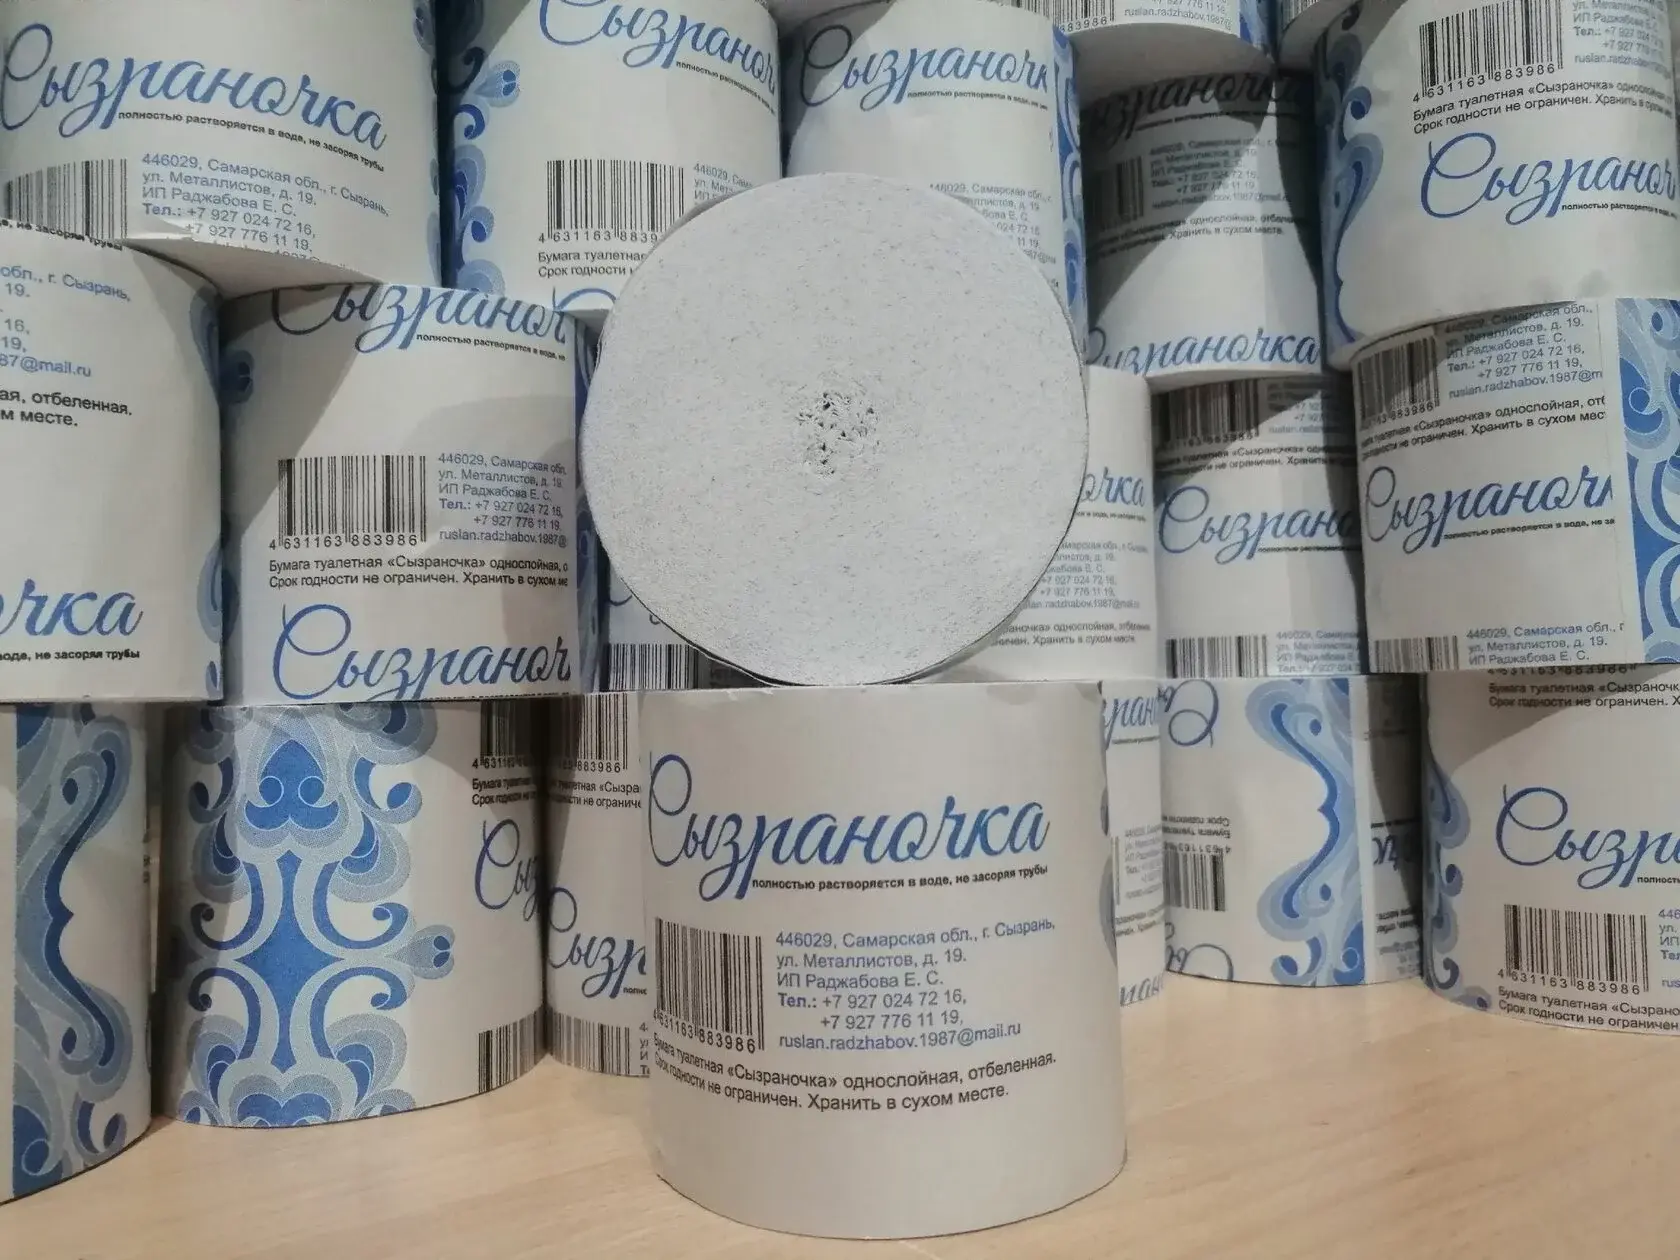 Подъём: производитель туалетной бумаги Сызраночка отказался менять название